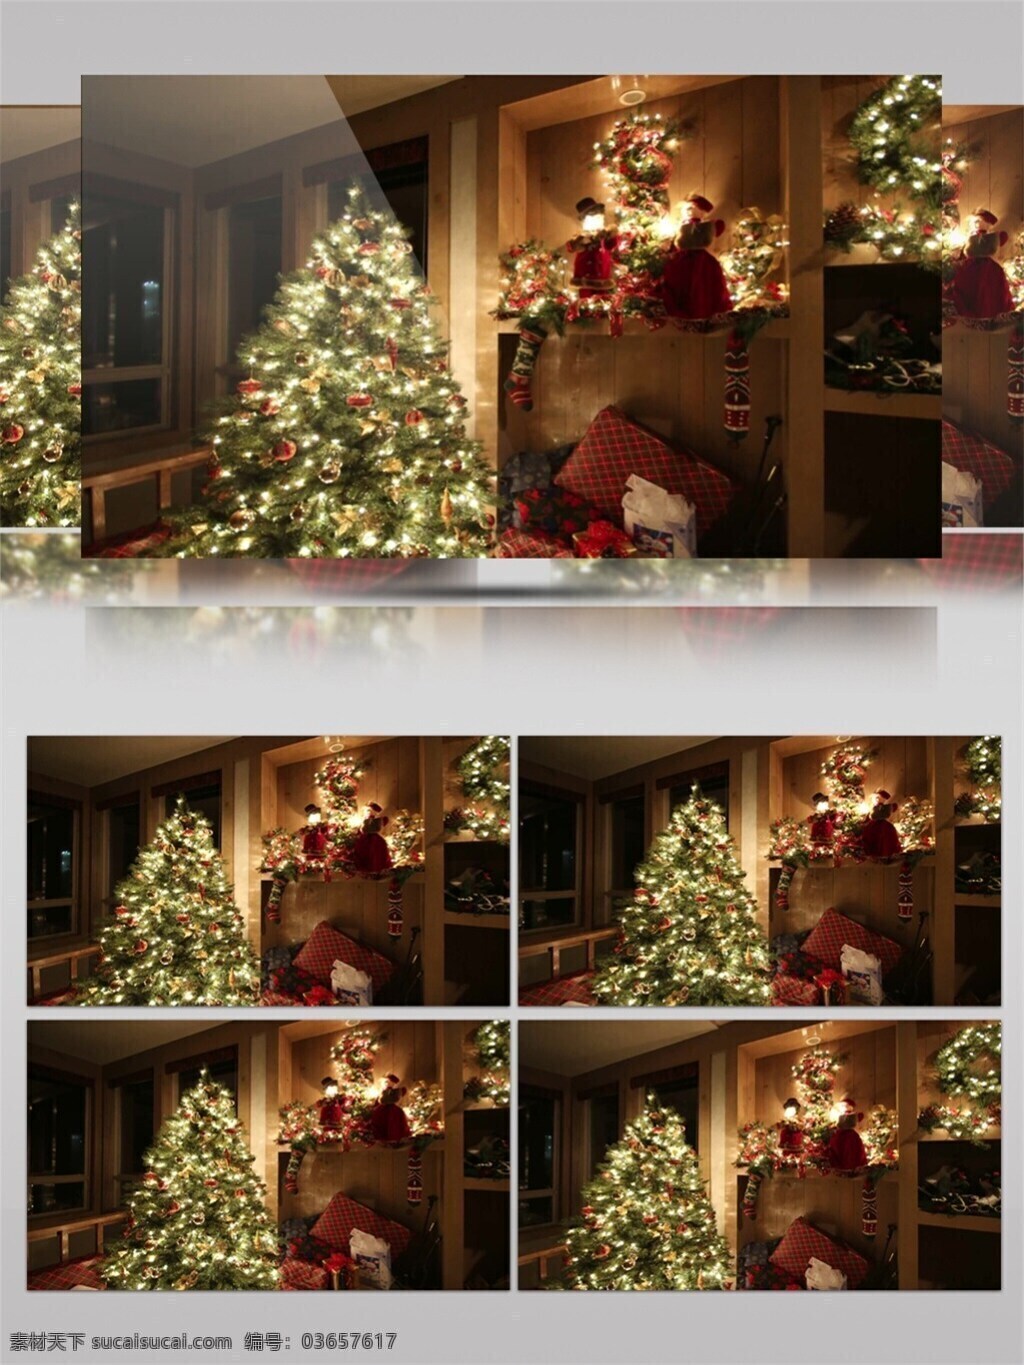 金色 圣诞树 圣诞节 视频 发光圣诞树 节日壁纸 节日 特效 平安夜礼物 圣诞节庆祝